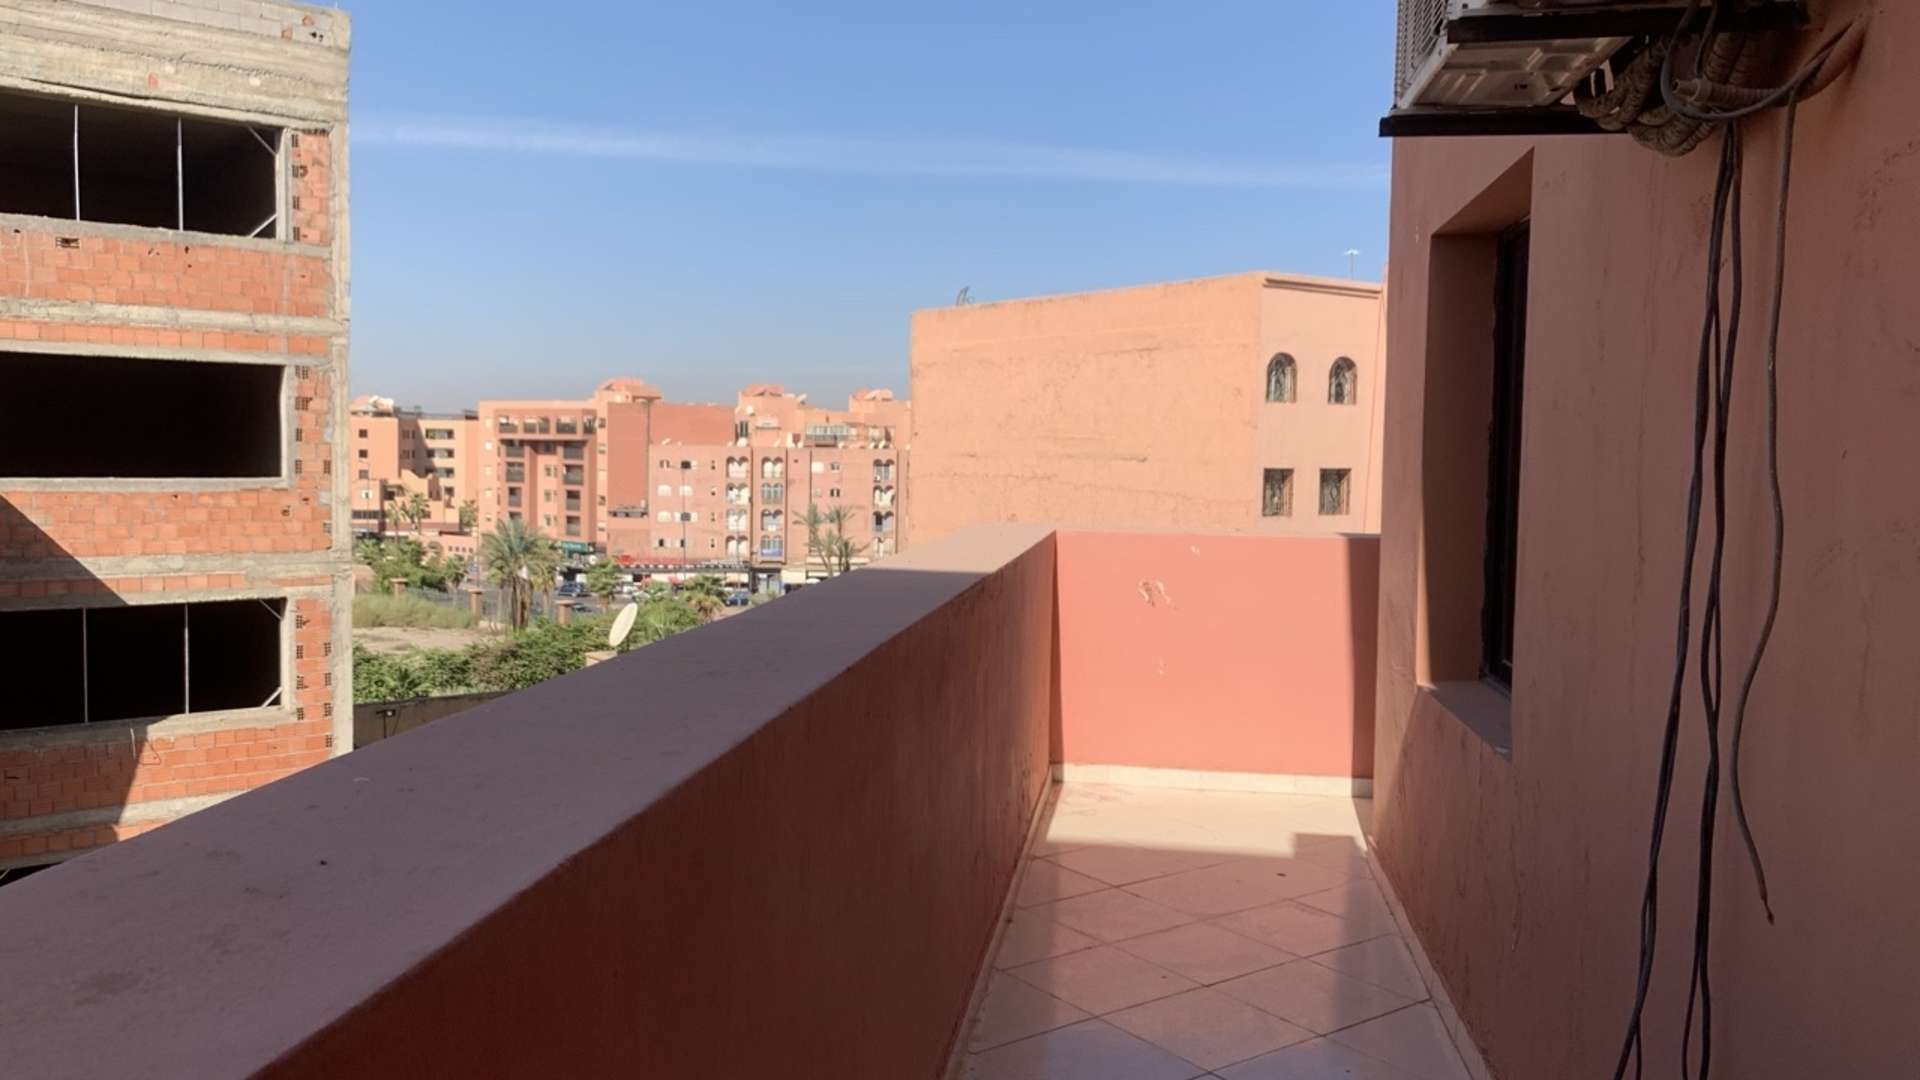 Location longue durée ,Bureaux & Commerces,Bureaux à louer à Marrakech. Surface de 160.0 m². Terrasse et ascenseur,Marrakech,Guéliz